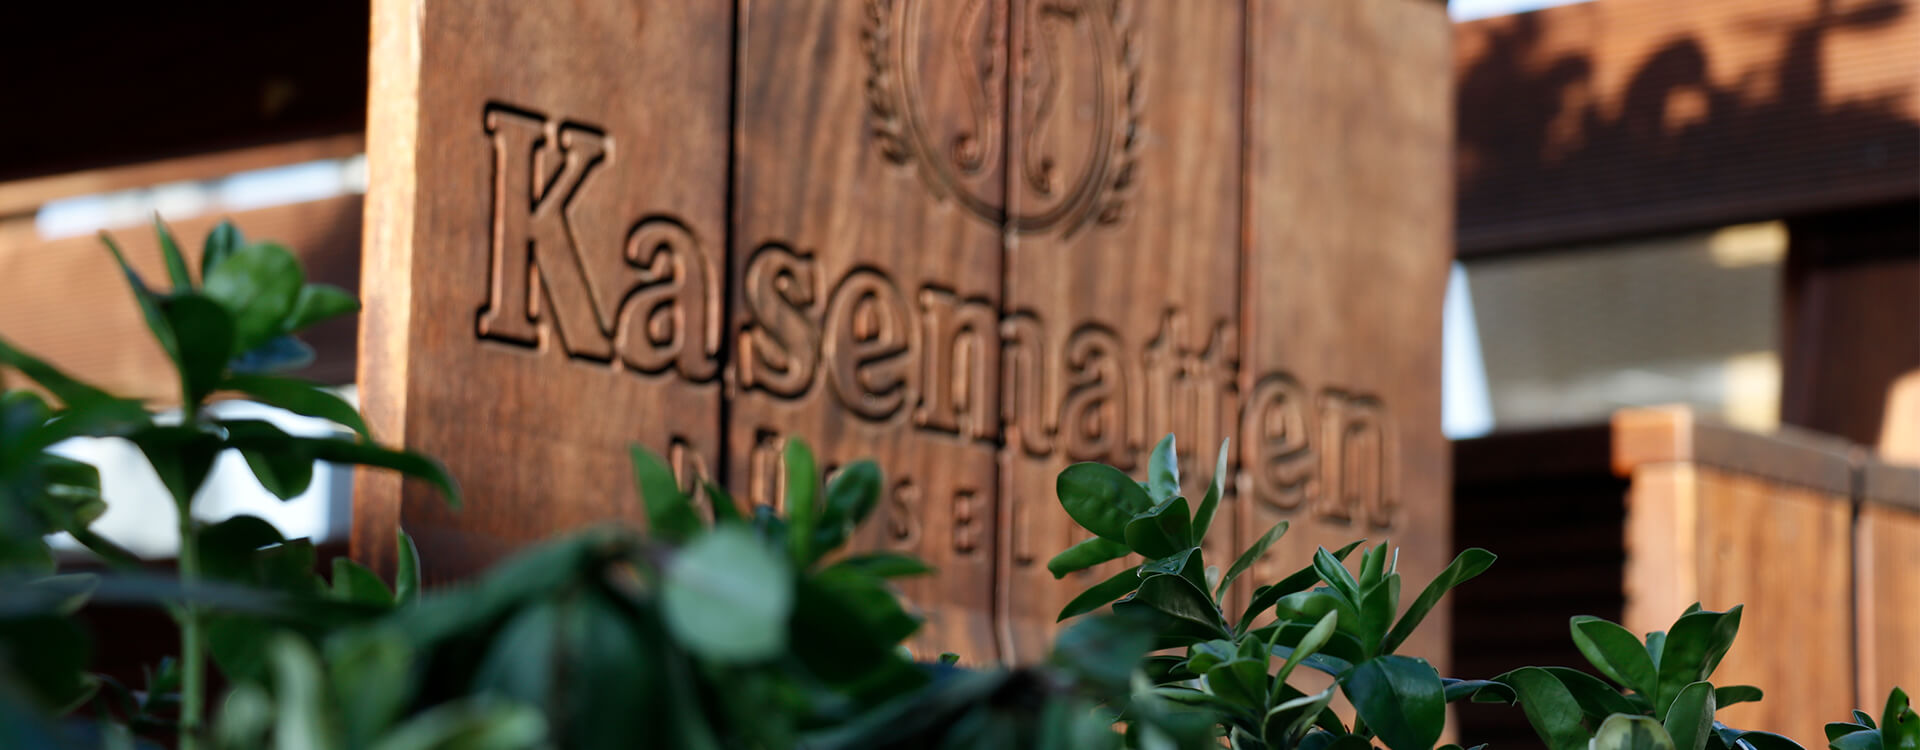 Ein Holzschild mit dem Logo der Kasematten eingraviert, steht vor einem Busch.